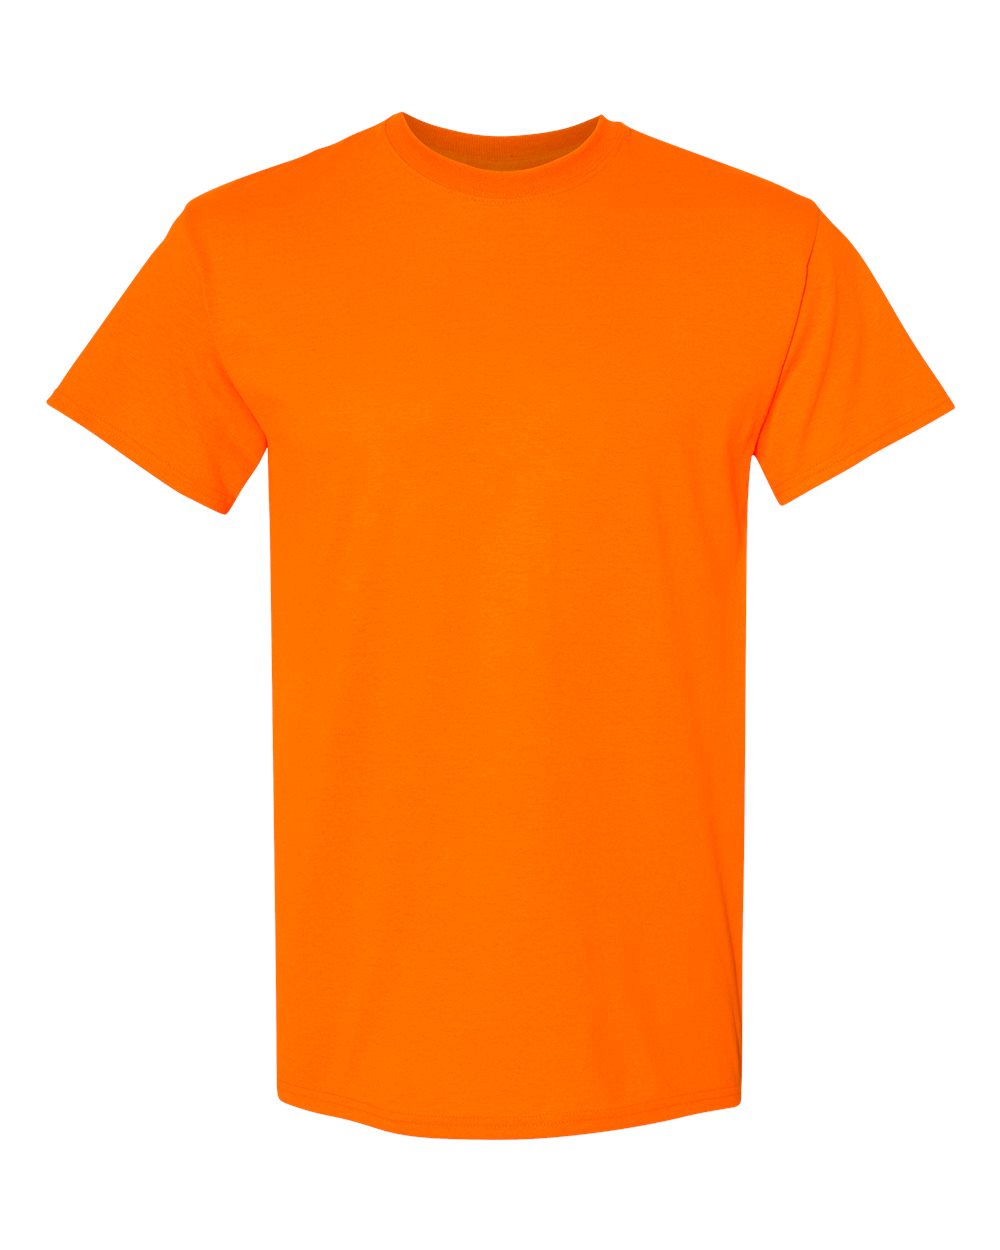 #IS5000 Safety Orange Cotton Tee - Gildan